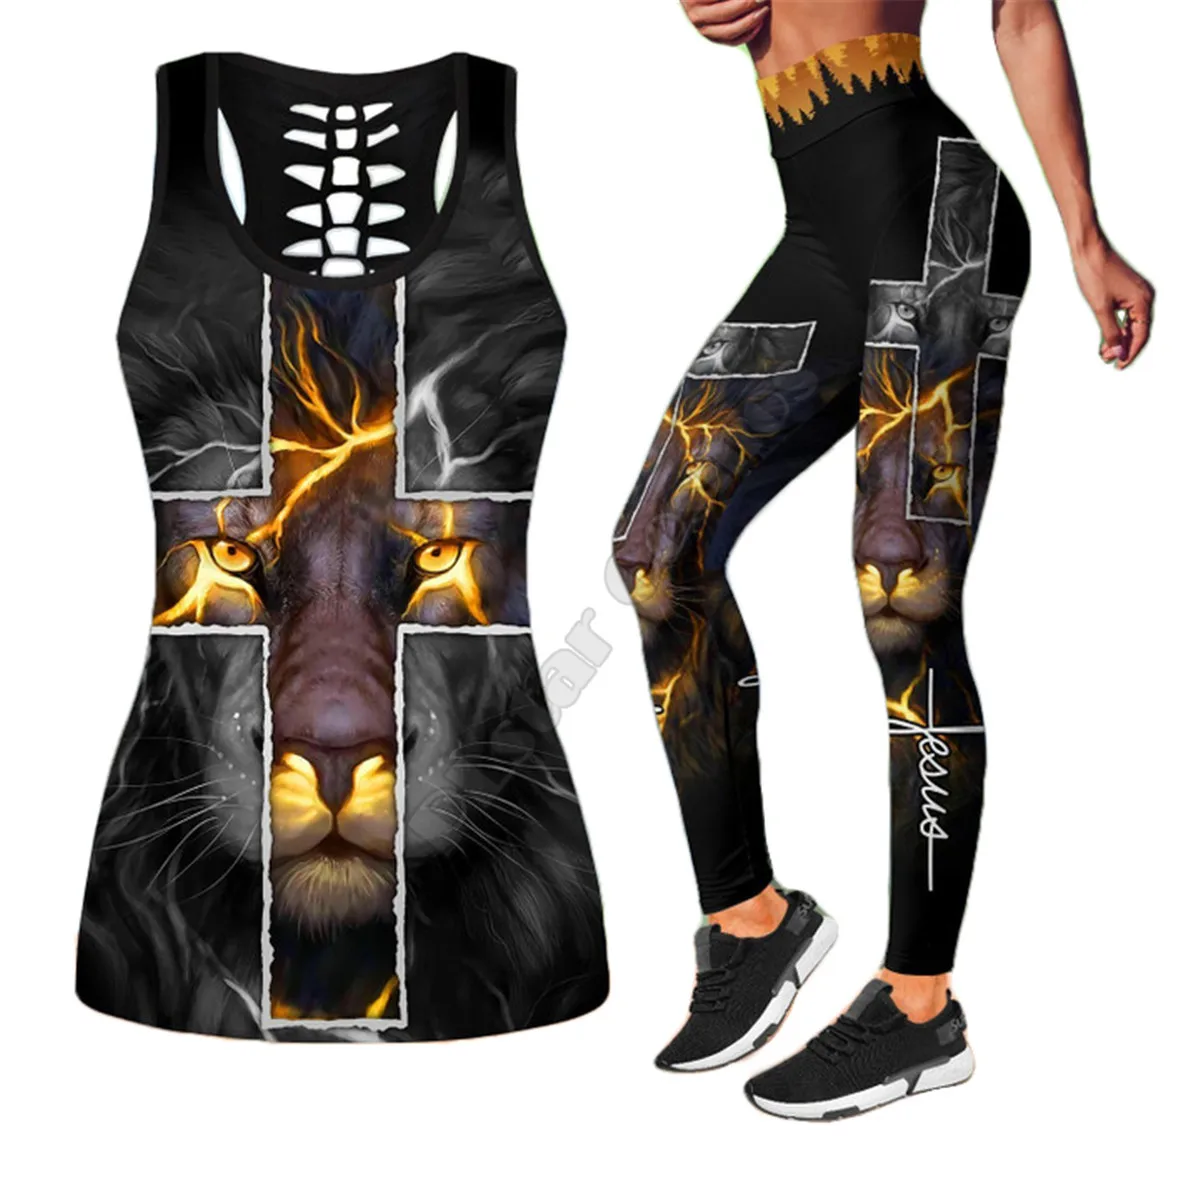 

Майка с 3D принтом Иисуса льва + леггинсы комбинированная одежда для йоги и фитнеса мягкие леггинсы летние женские для девочек